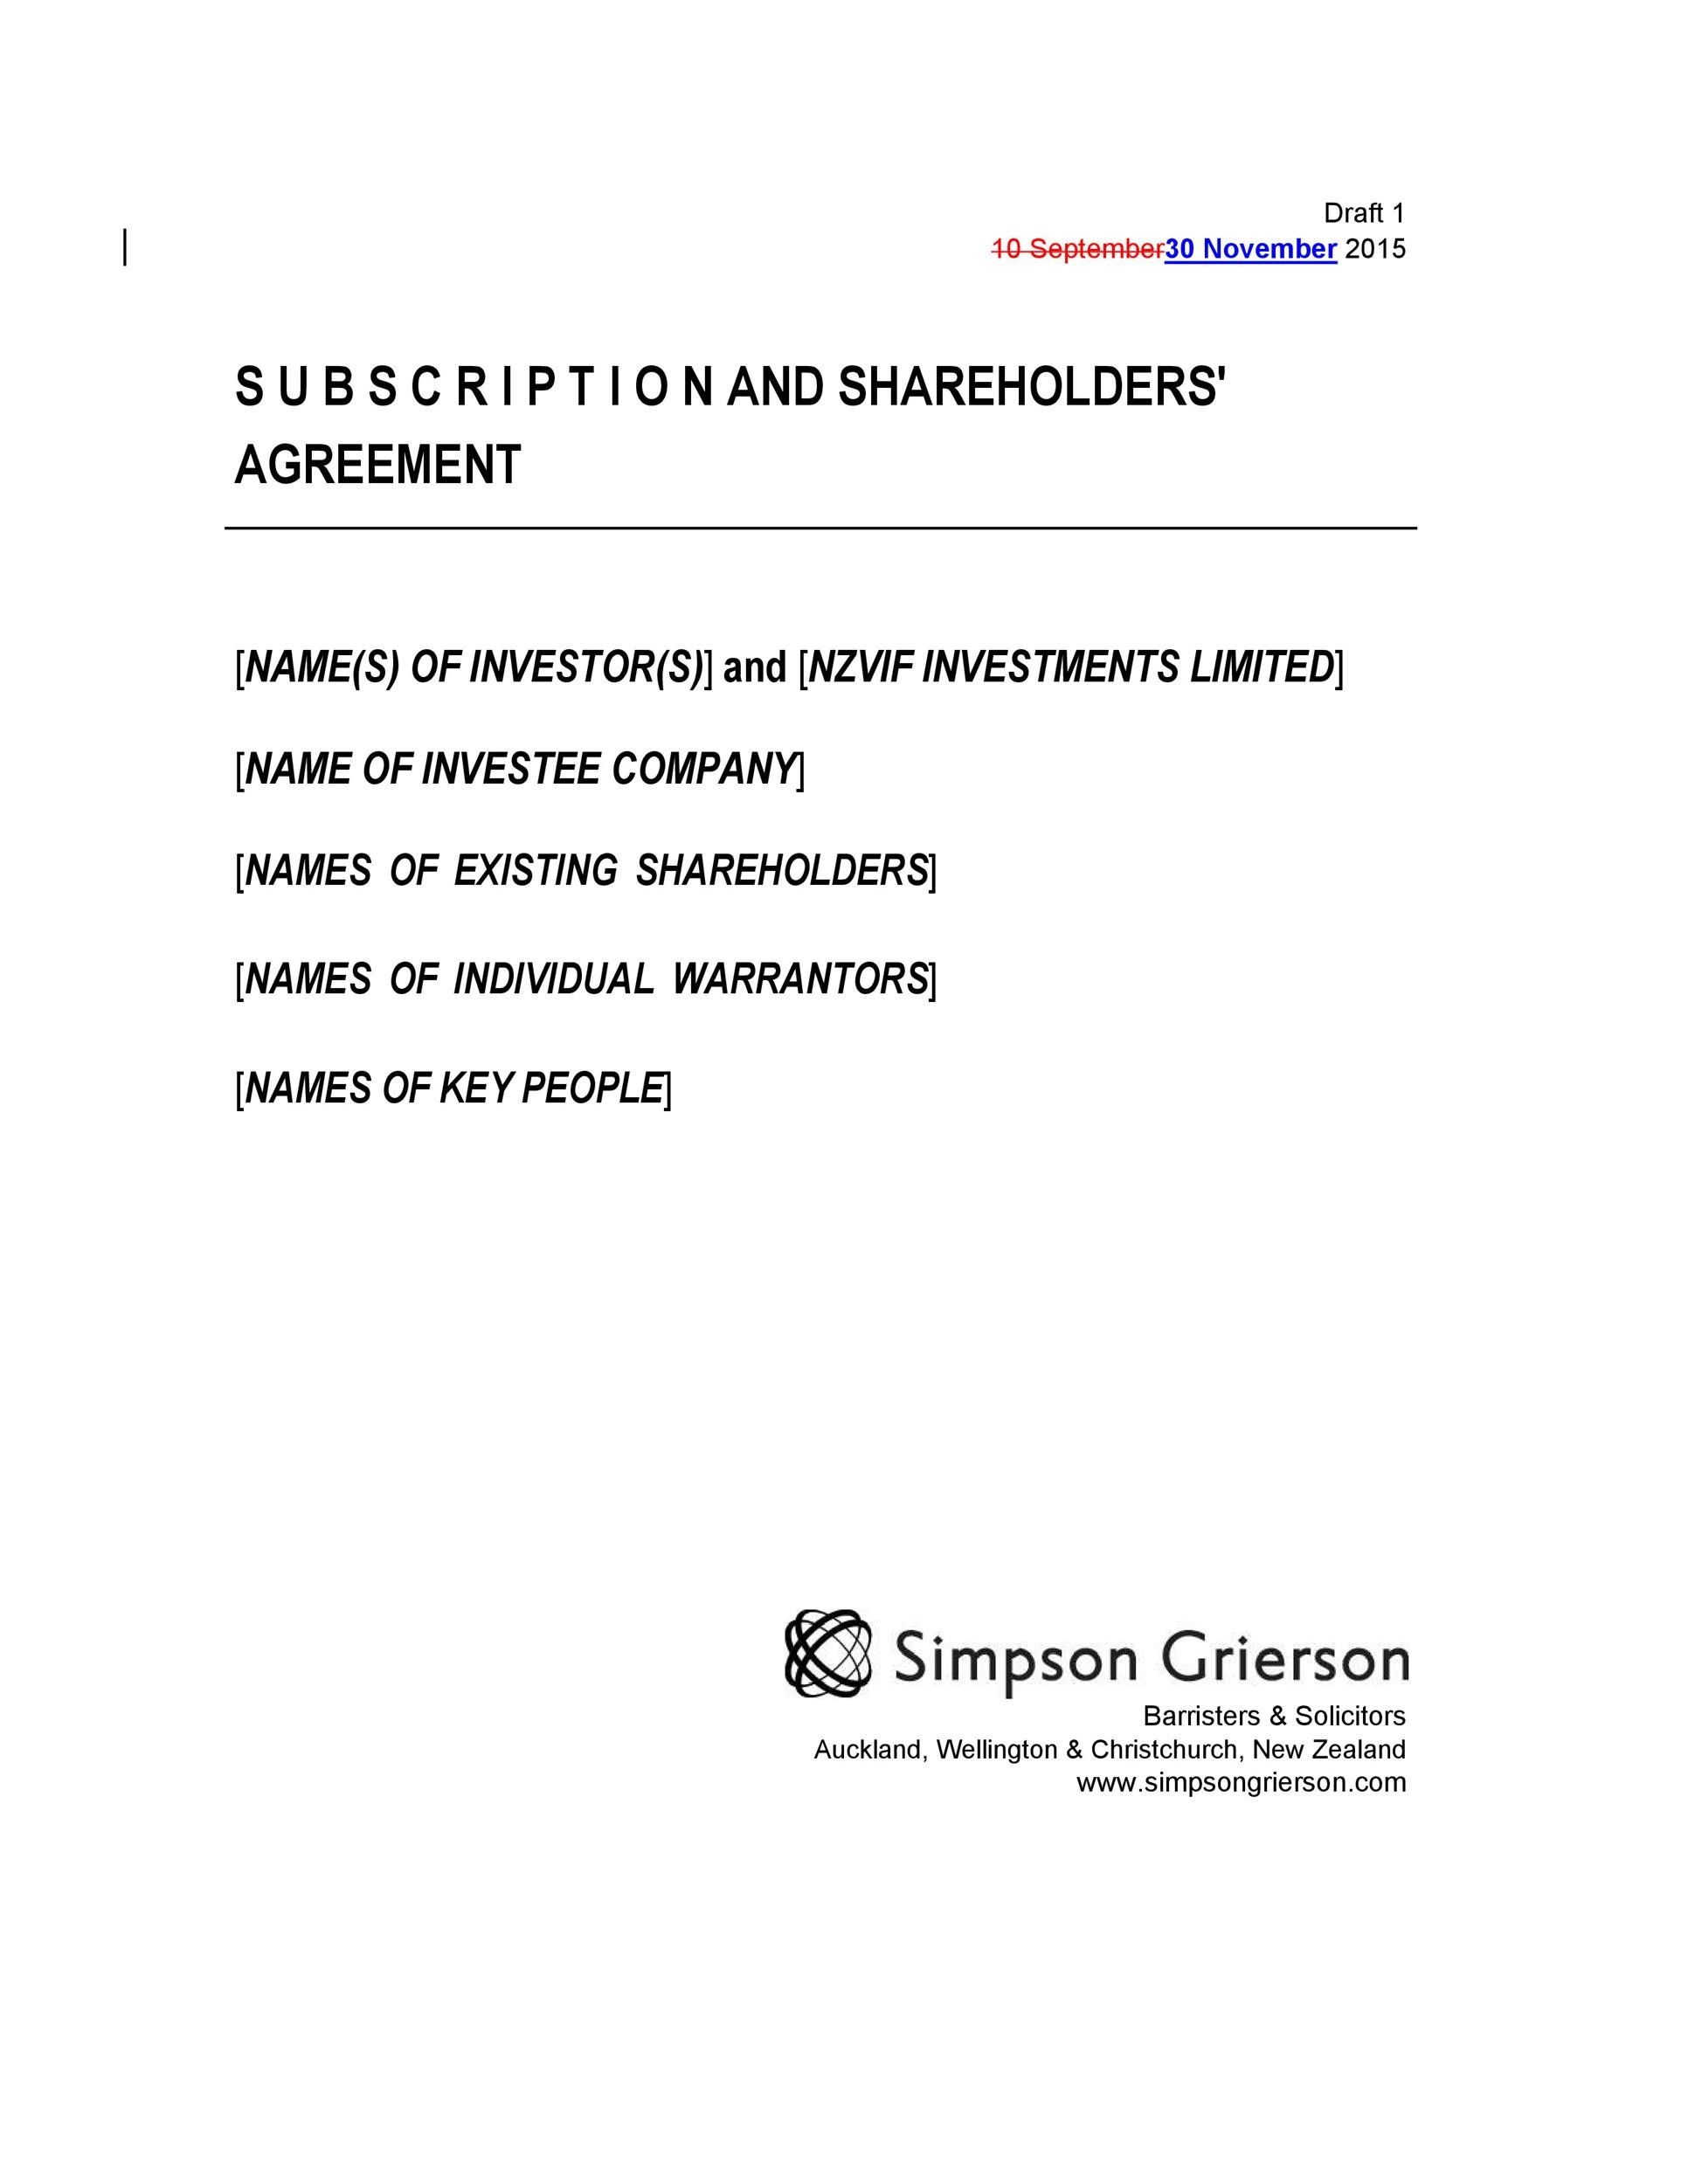 Free shareholder agreement 26